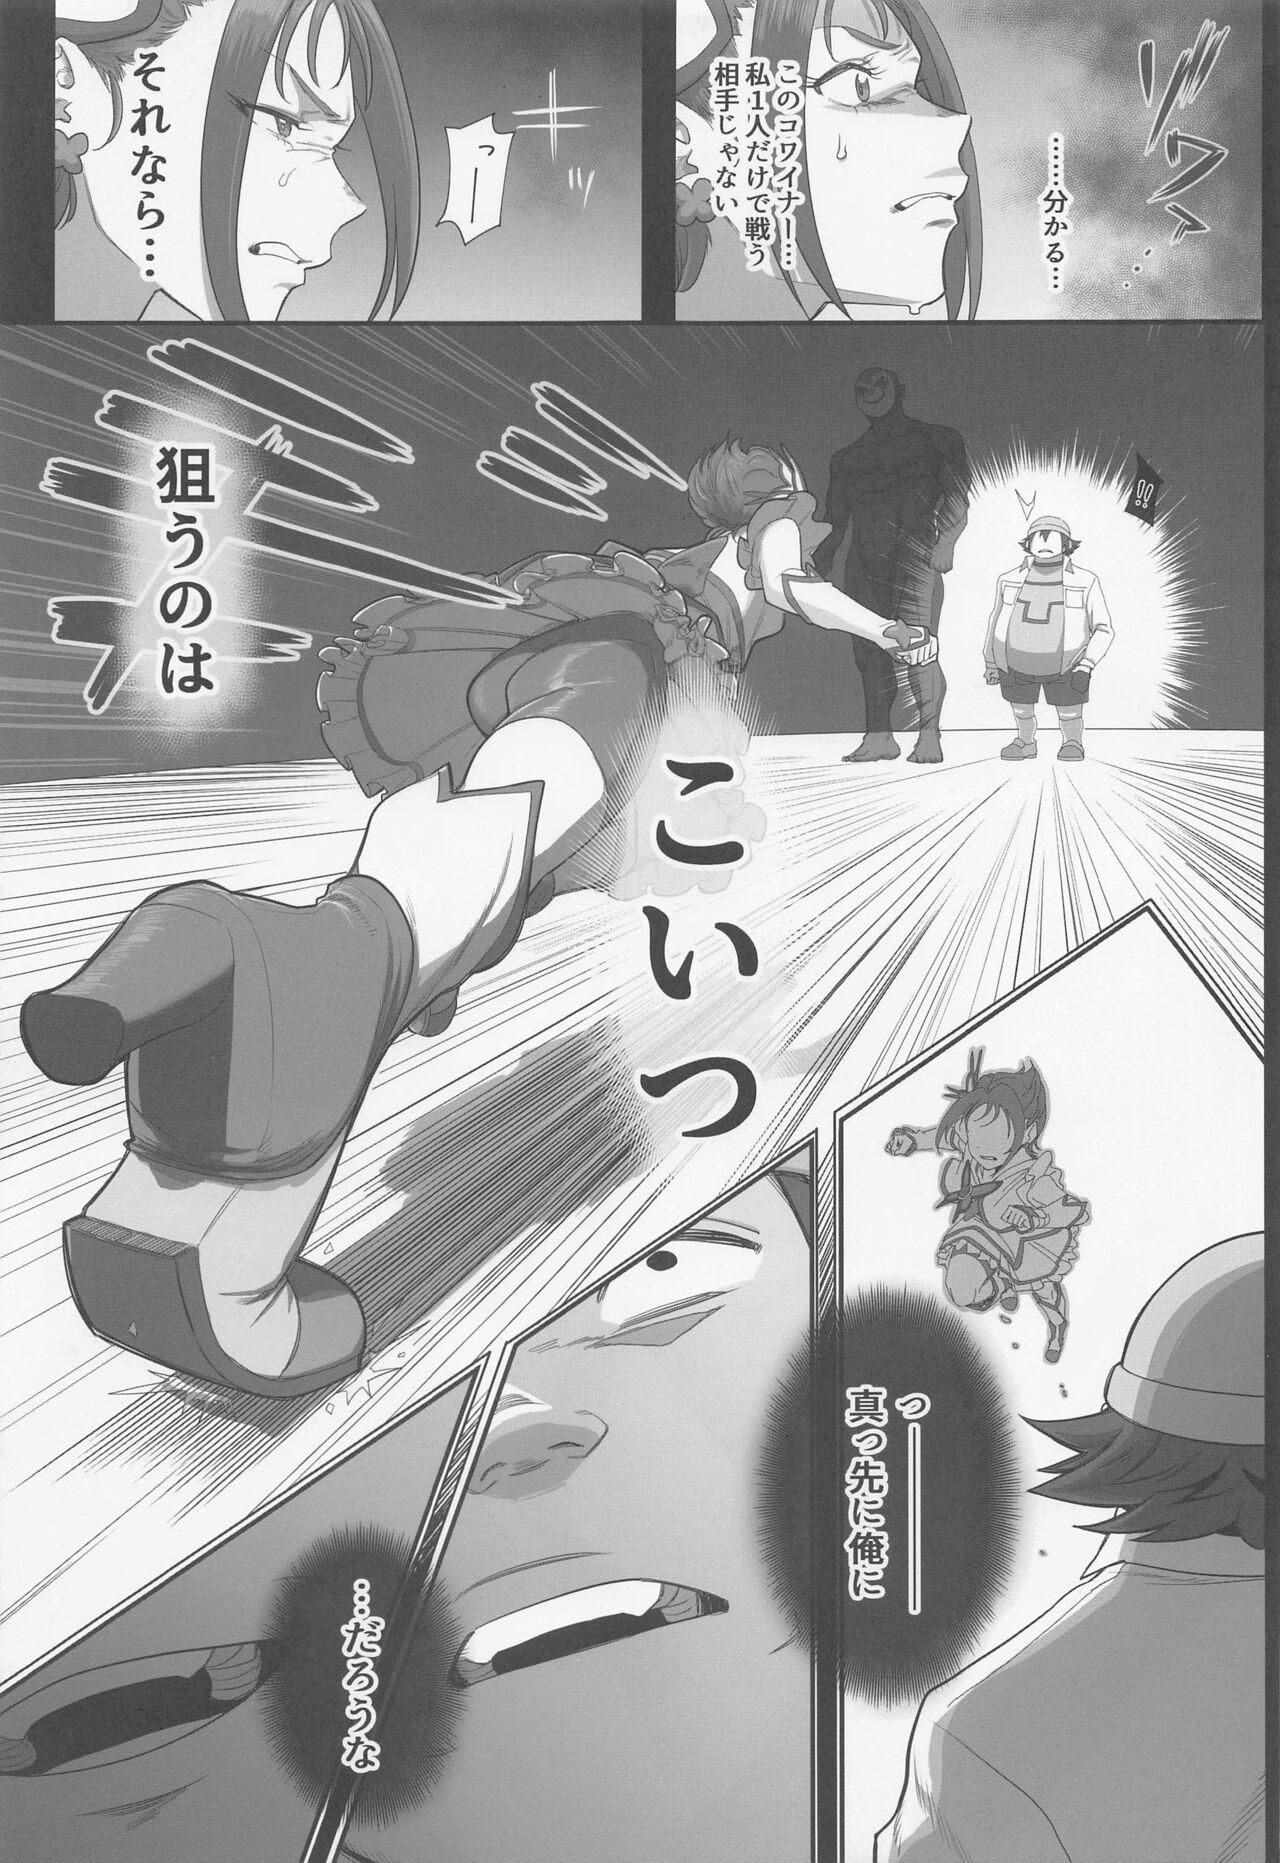 Cosplay Precure no Rakujitsu 2 - Yes precure 5 Belly - Page 8